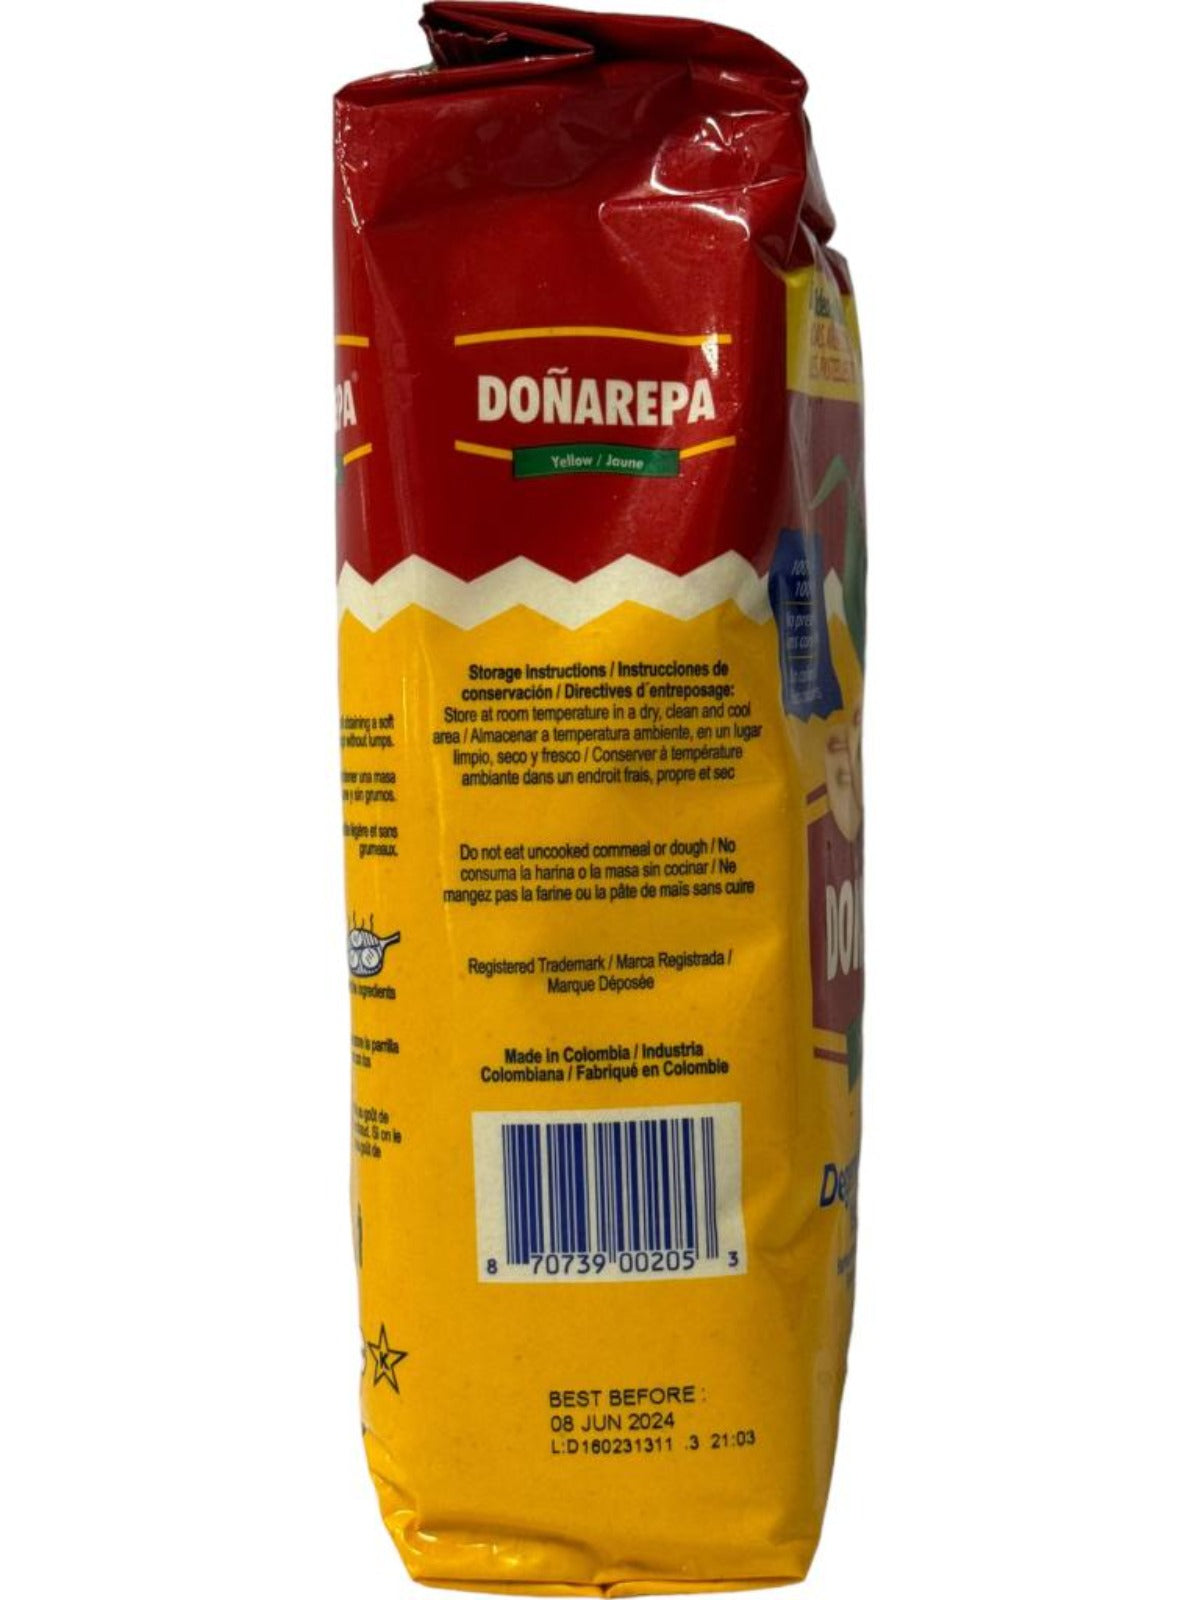 Donarepa Colombian Arepa Yellow Corn flour 1kg ea- 4pack 4kg total